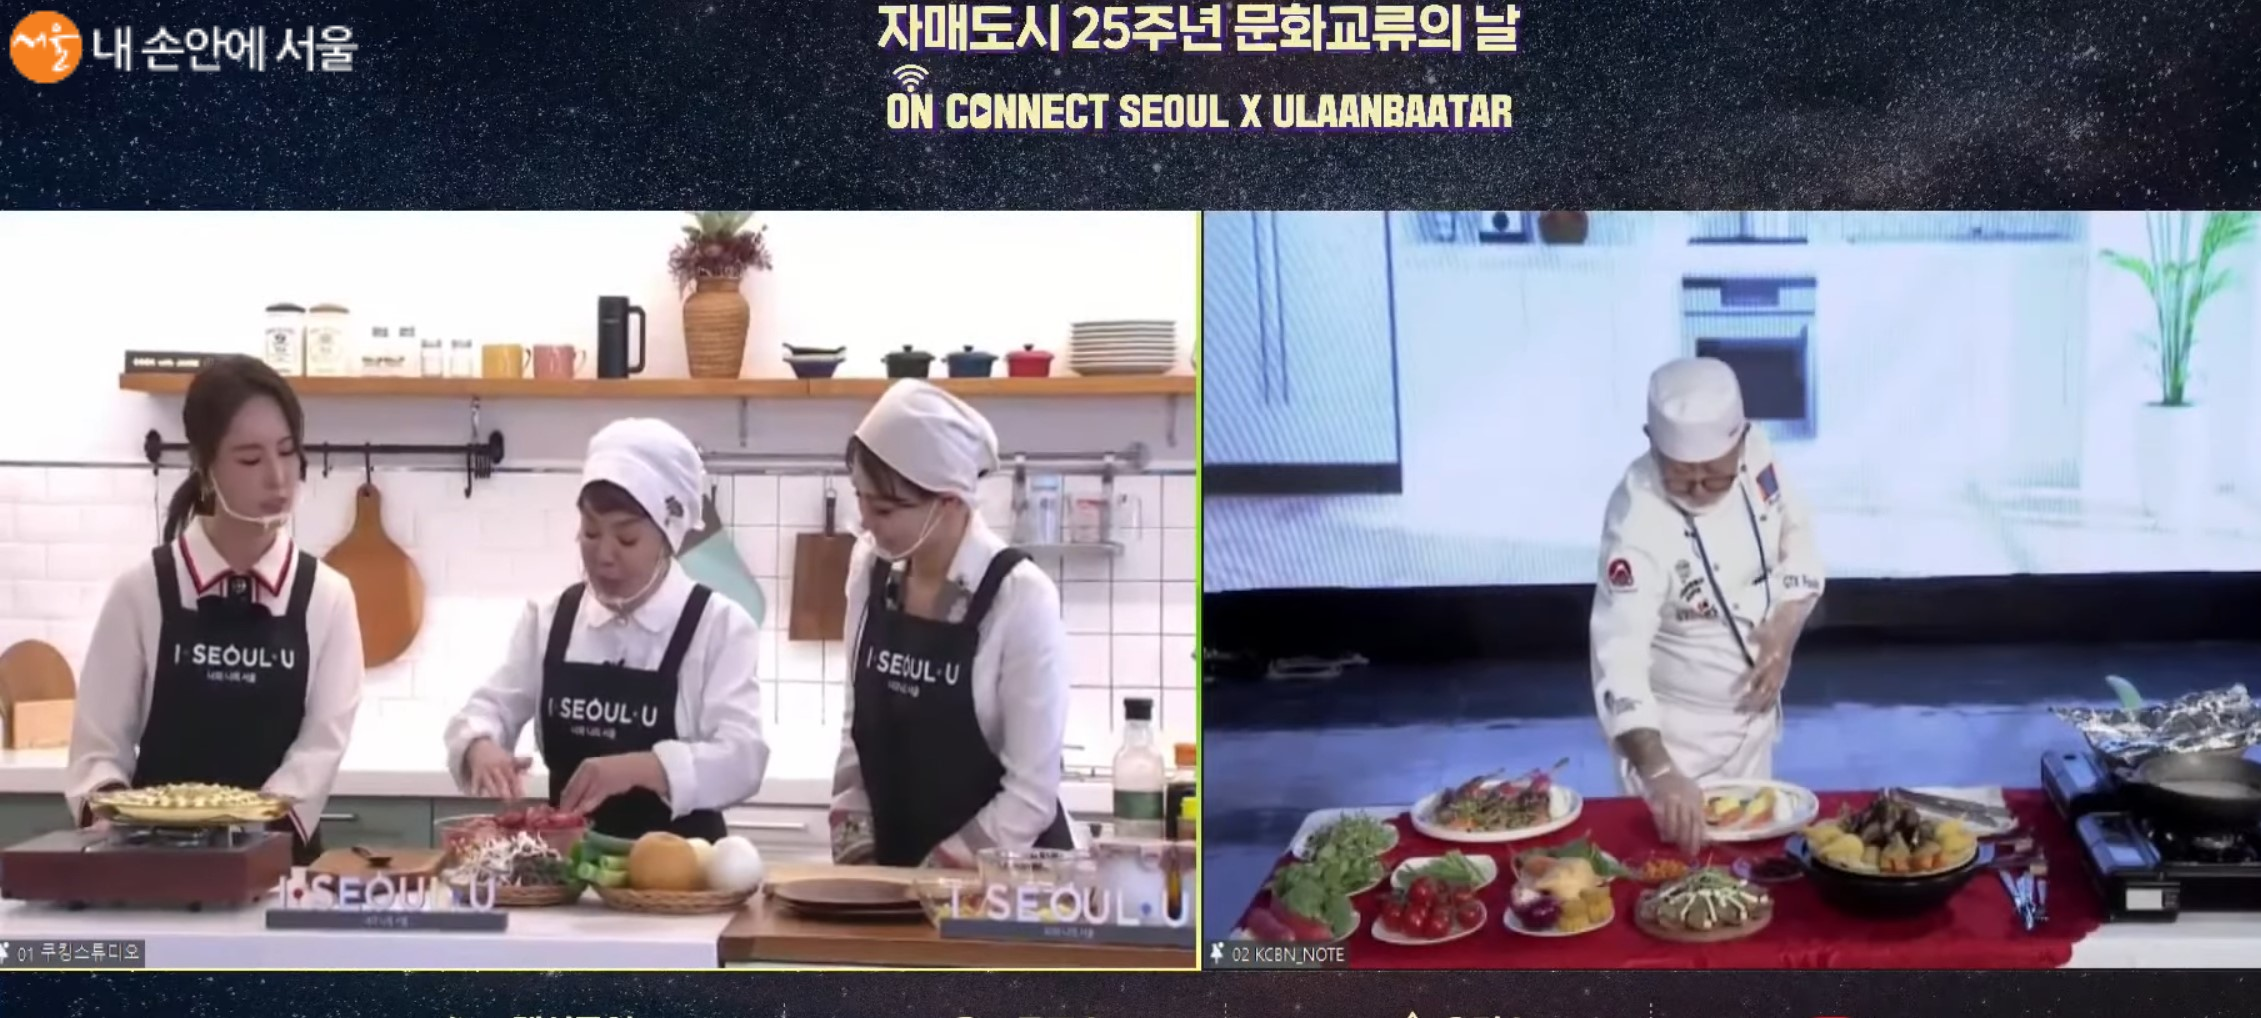 서울에서는 김수미 씨(가운데)가, 울란바토르에서는 MIKO 씨가 실시간 음식을 요리하고 있는 모습이다